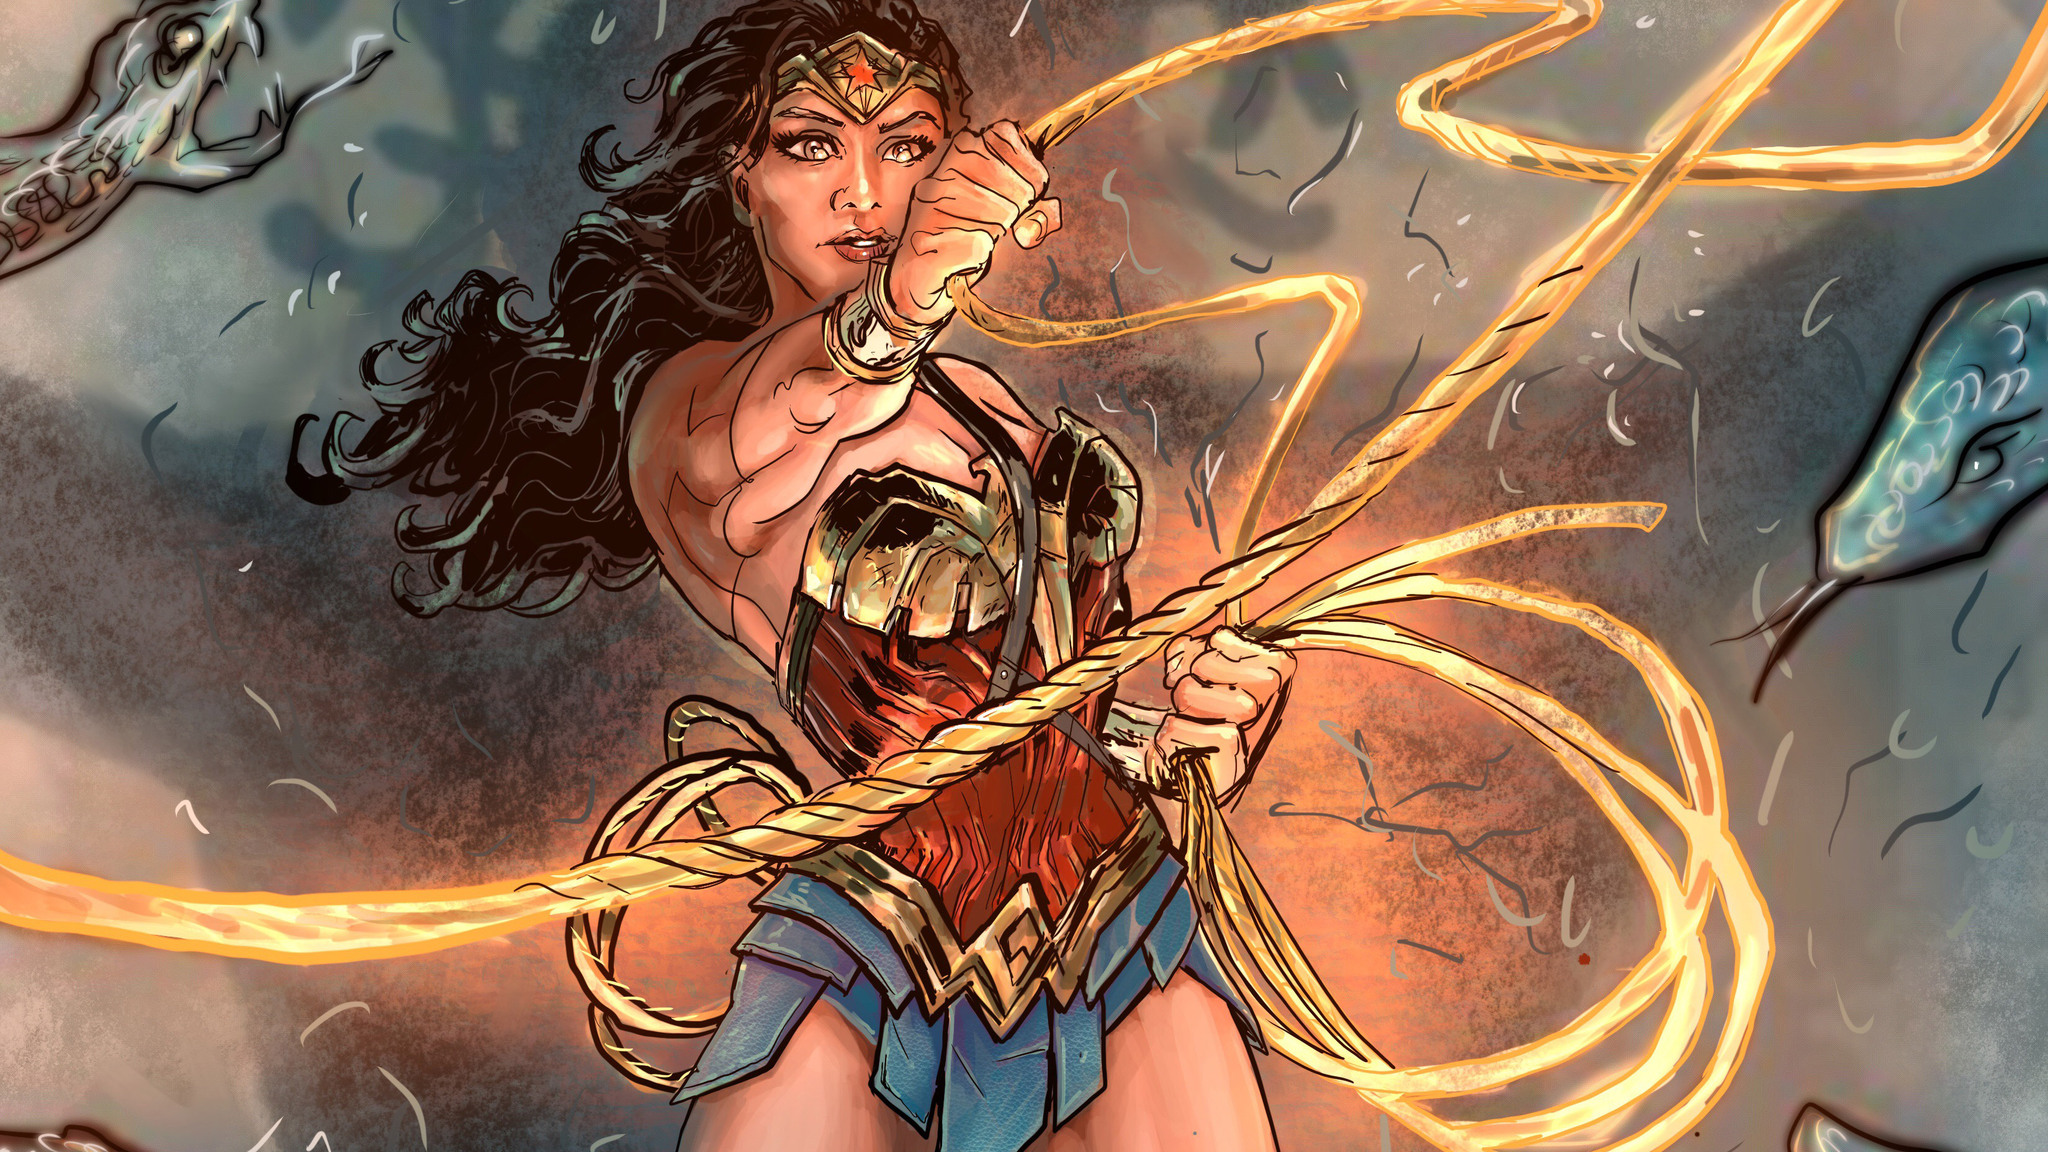 Wonder Woman Fanart Wallpapers